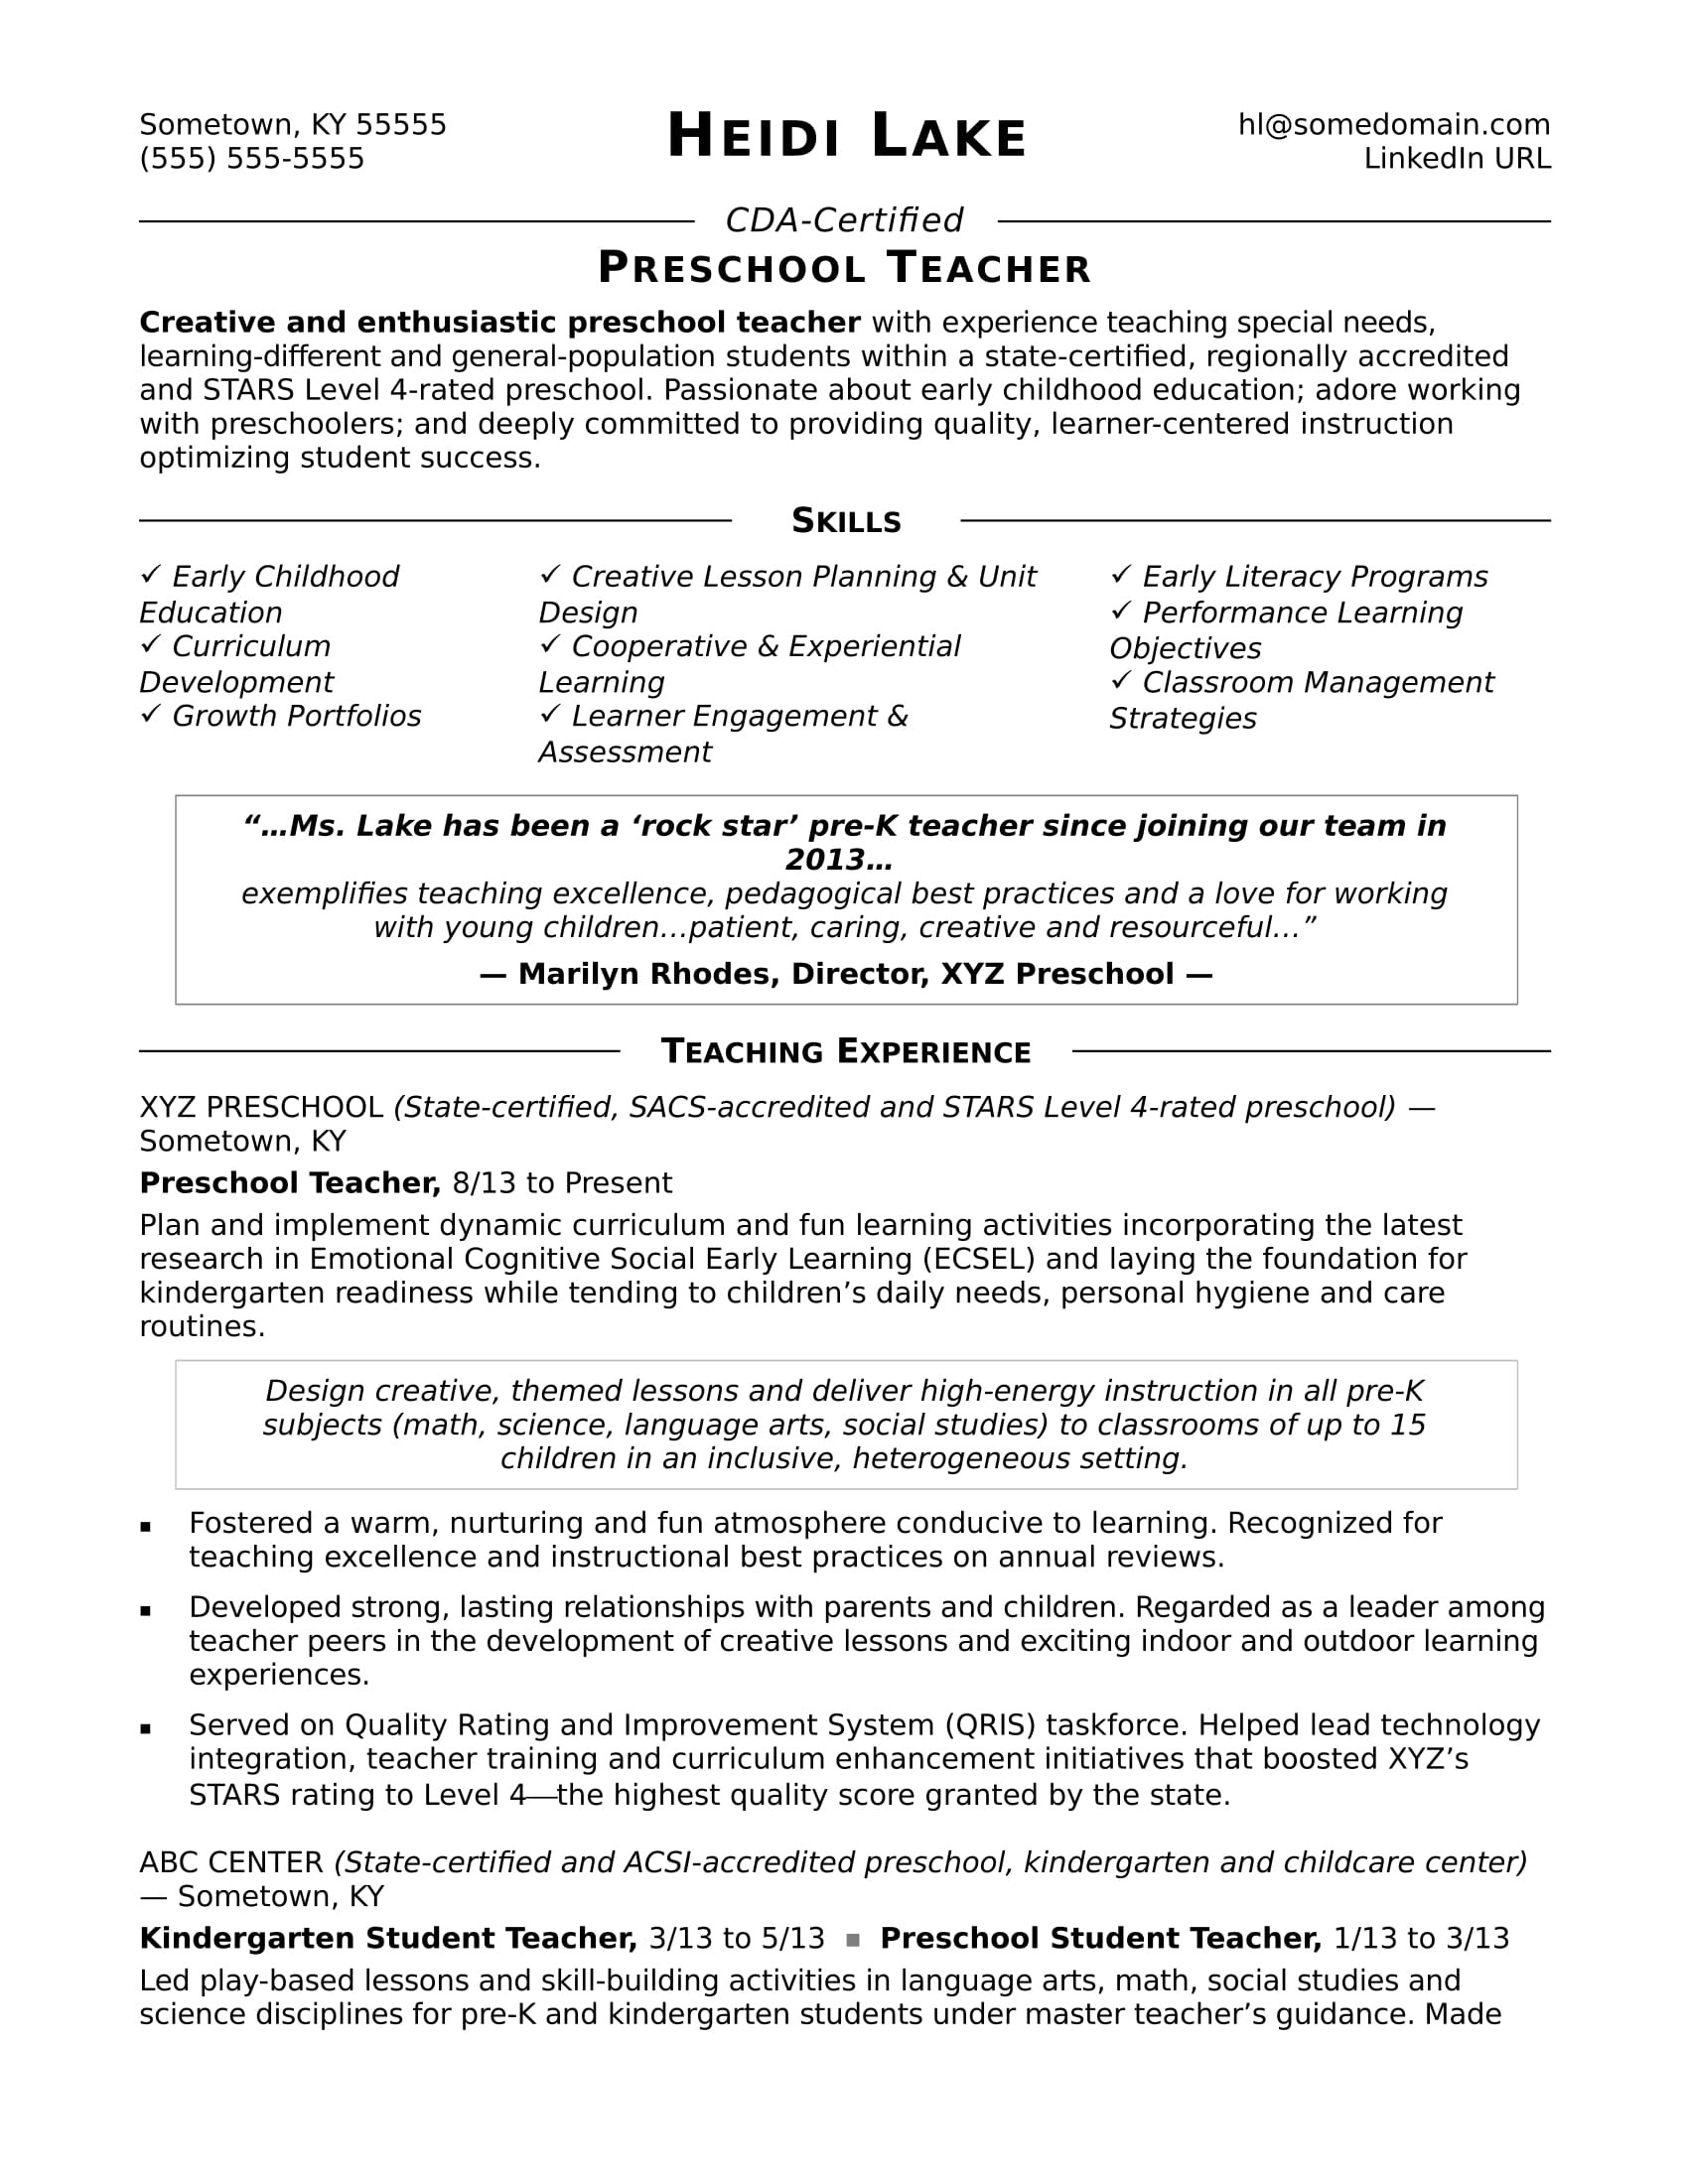 Entry Level Preschool Teacher Resume Sample Preschool Teacher Resume Sample Monster.com